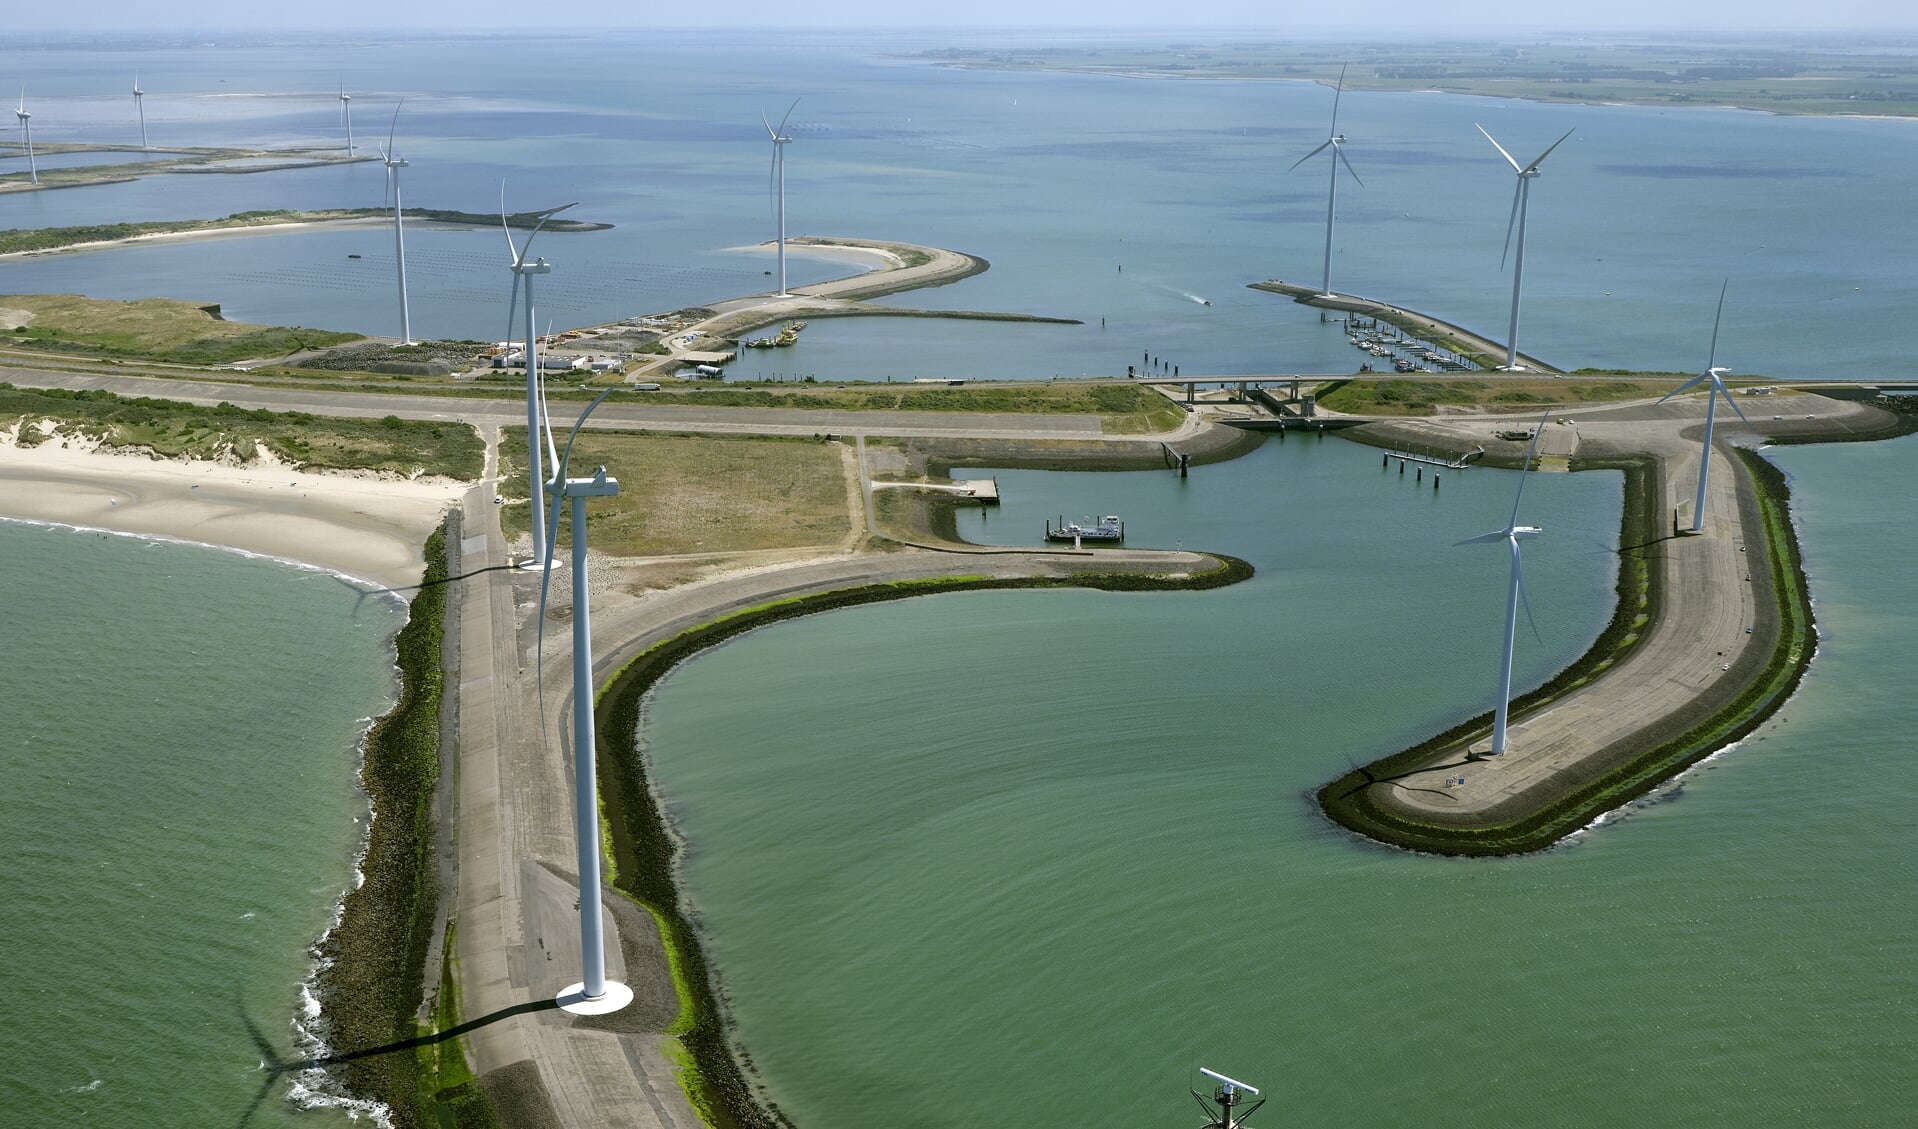 Luchtopname van de Zeeuwse Deltawerken ter hoogte van de Roompotsluis in de Oosterscheldekering. Deze stormvloedkering wordt beschouwd als de meest indrukwekkende waterkering ooit in Nederland gebouwd. 